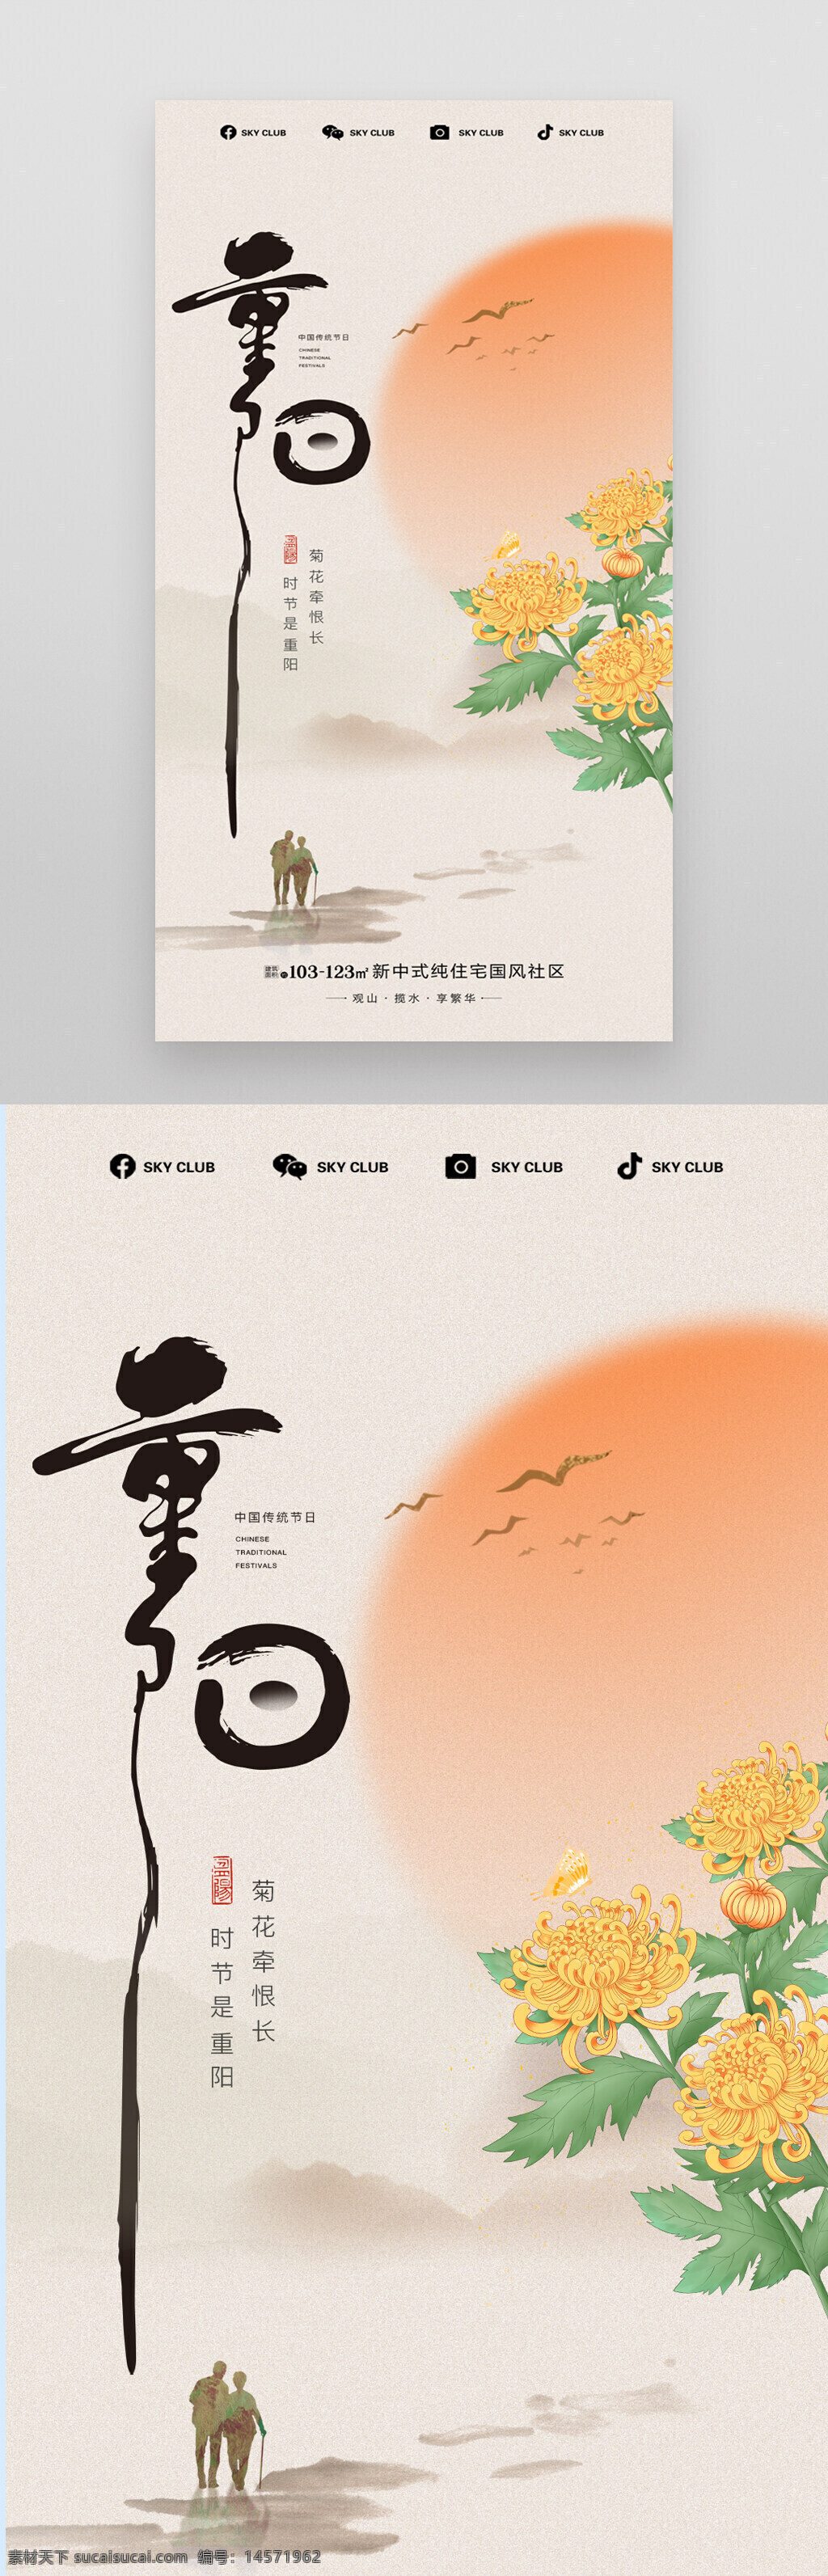 重阳节 菊花 老人 中式海报 节日宣传 太阳